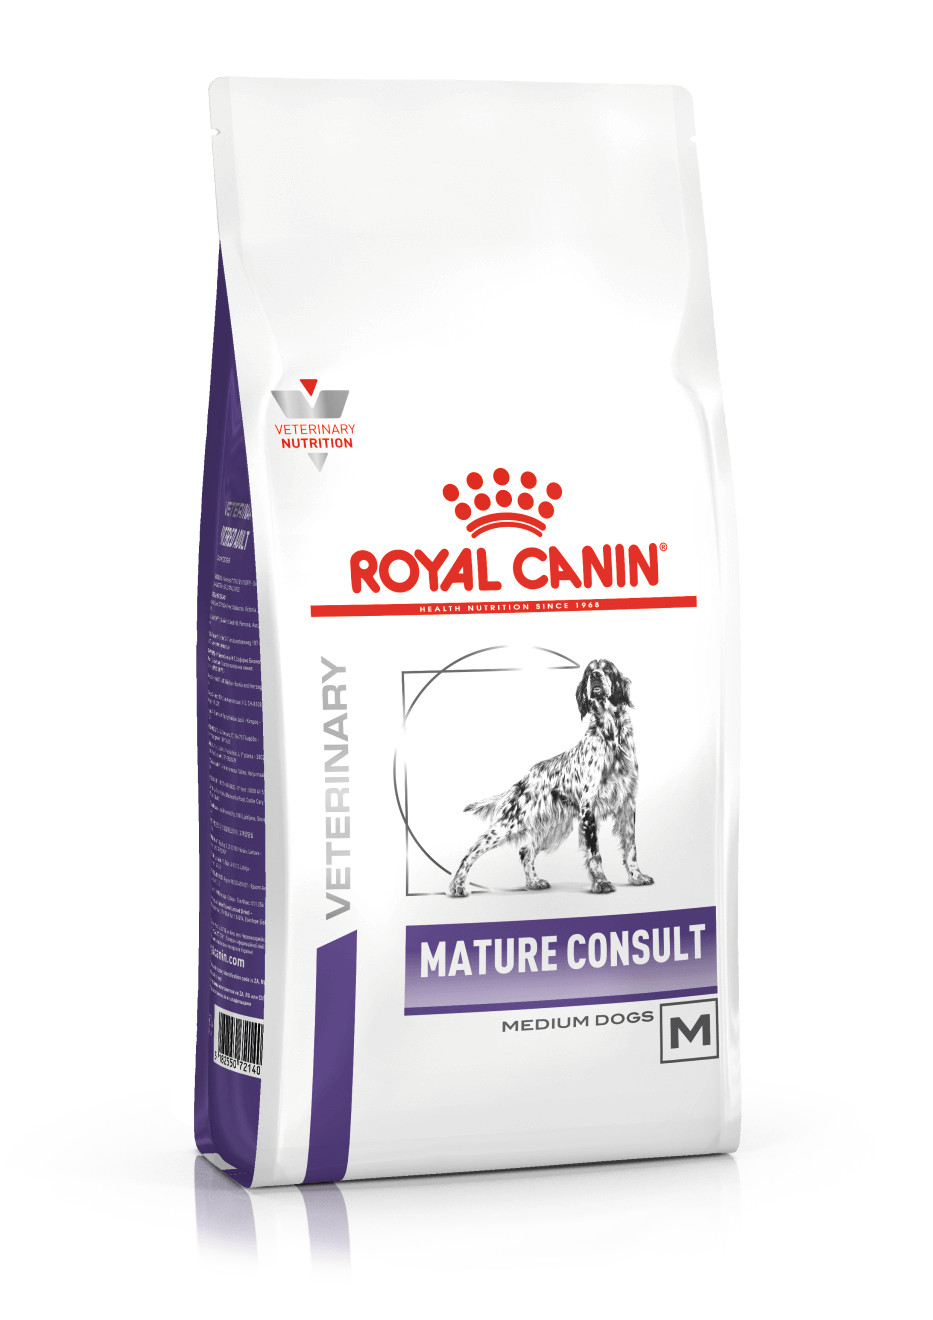 Royal Canin Veterinary Mature Consult Medium Dogs hondenvoer